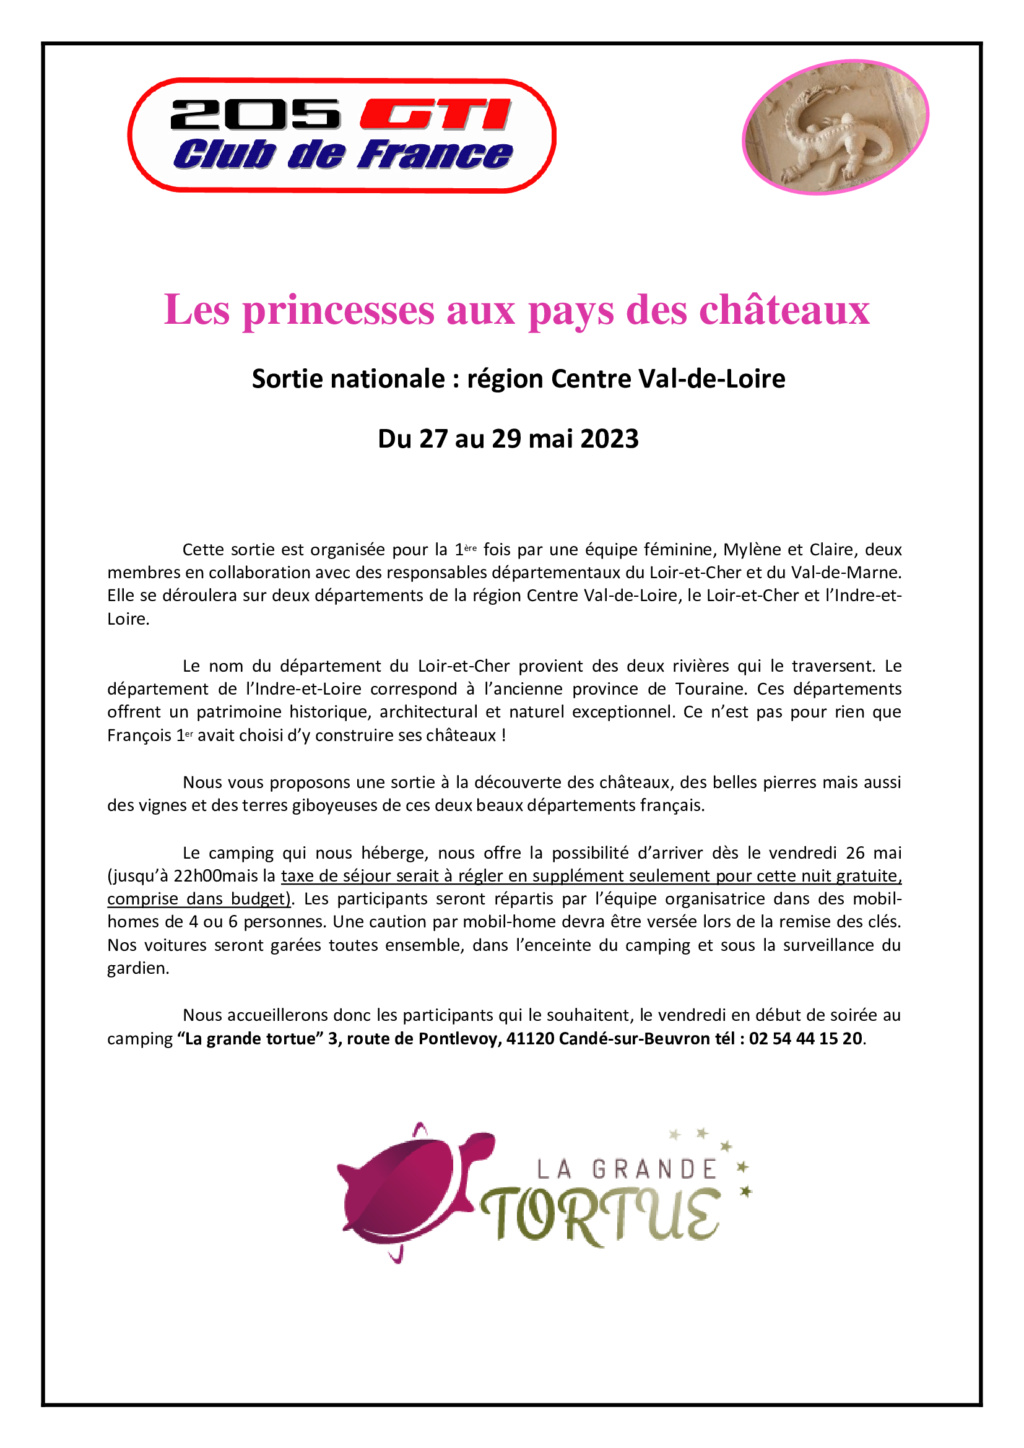 [37, 41] Sortie Nationale "Les princesses aux pays des châteaux" - 27 au 29 mai 2023 Région Centre 1-910